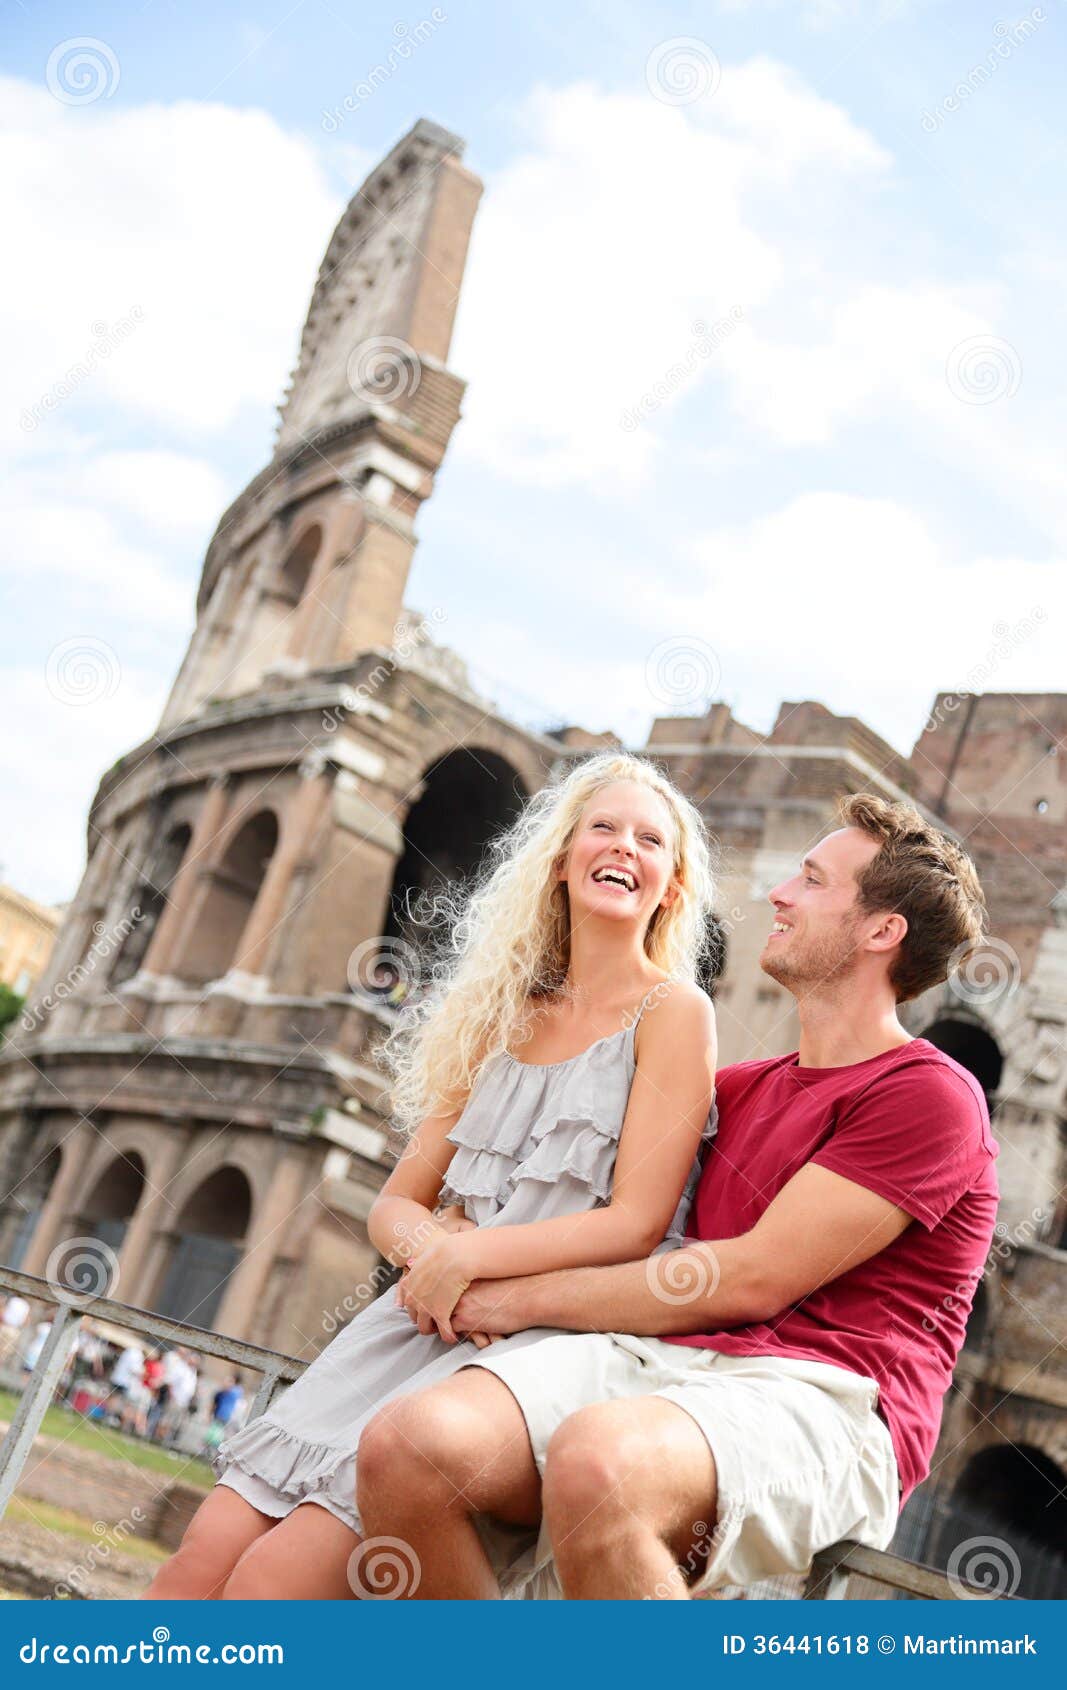 Rome, Italy | Rome, Couple photos, Italy